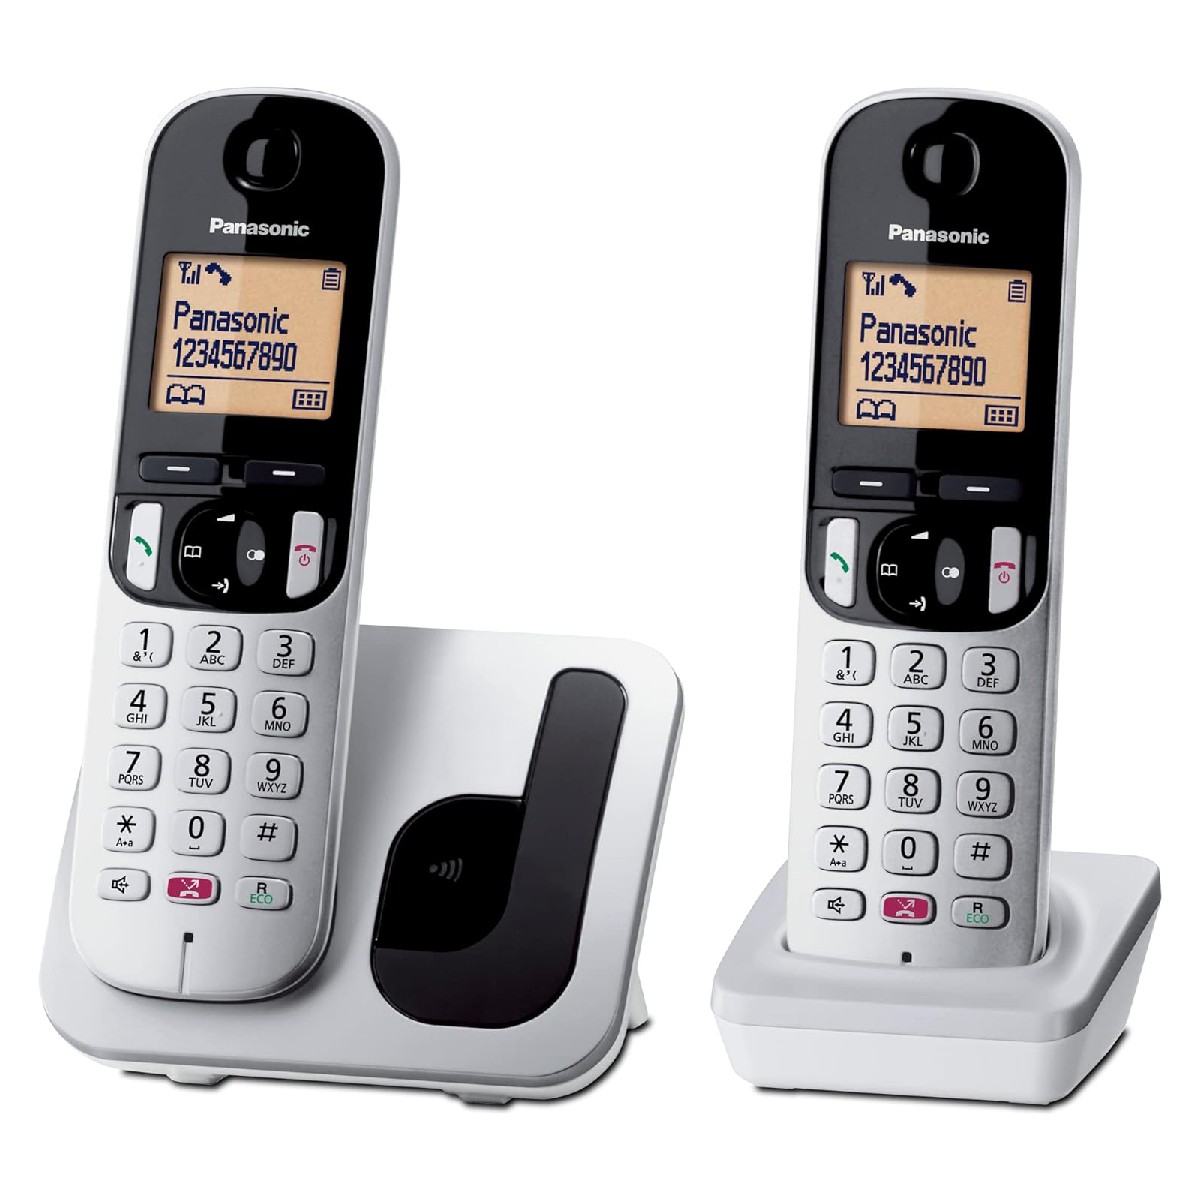 Ασύρματο Ψηφιακό Τηλέφωνο Panasonic KX-TGC252 EU DUO με Πλήκτρο Αποκλεισμού Κλήσεων και Ανοιχτή Ακρόαση Ασημί